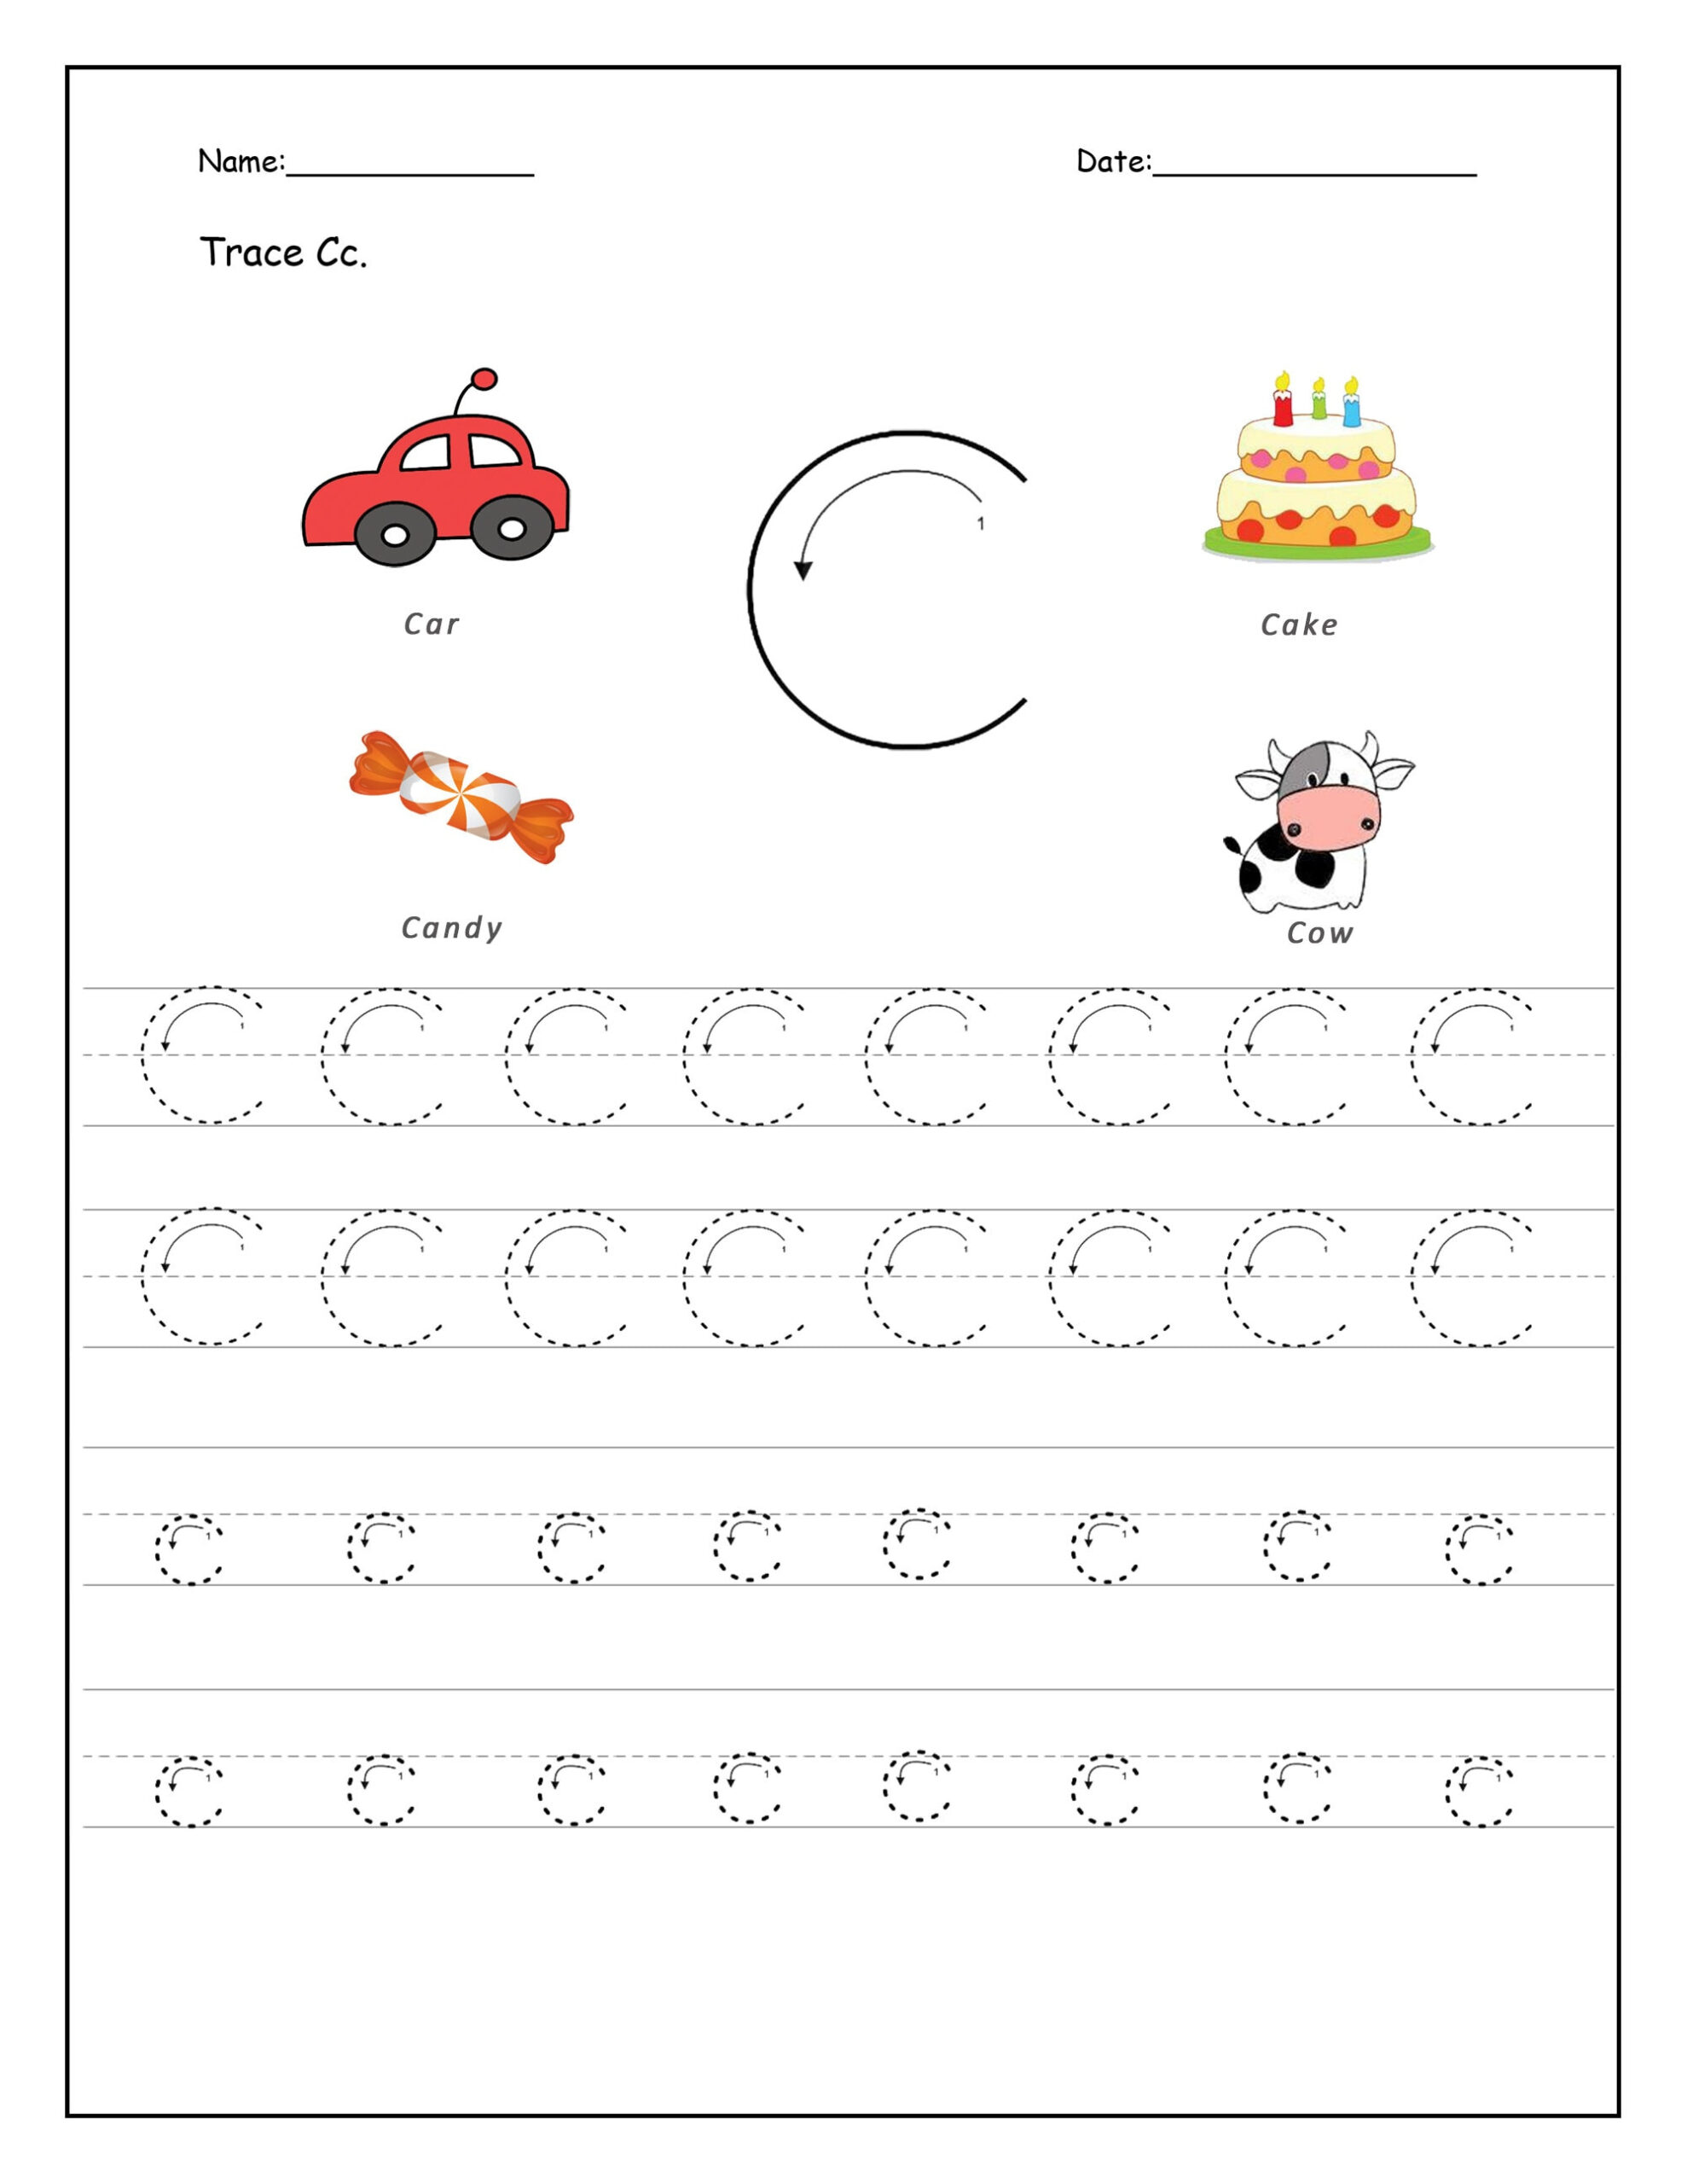 trace-letter-c-worksheets-preschool-tracinglettersworksheets